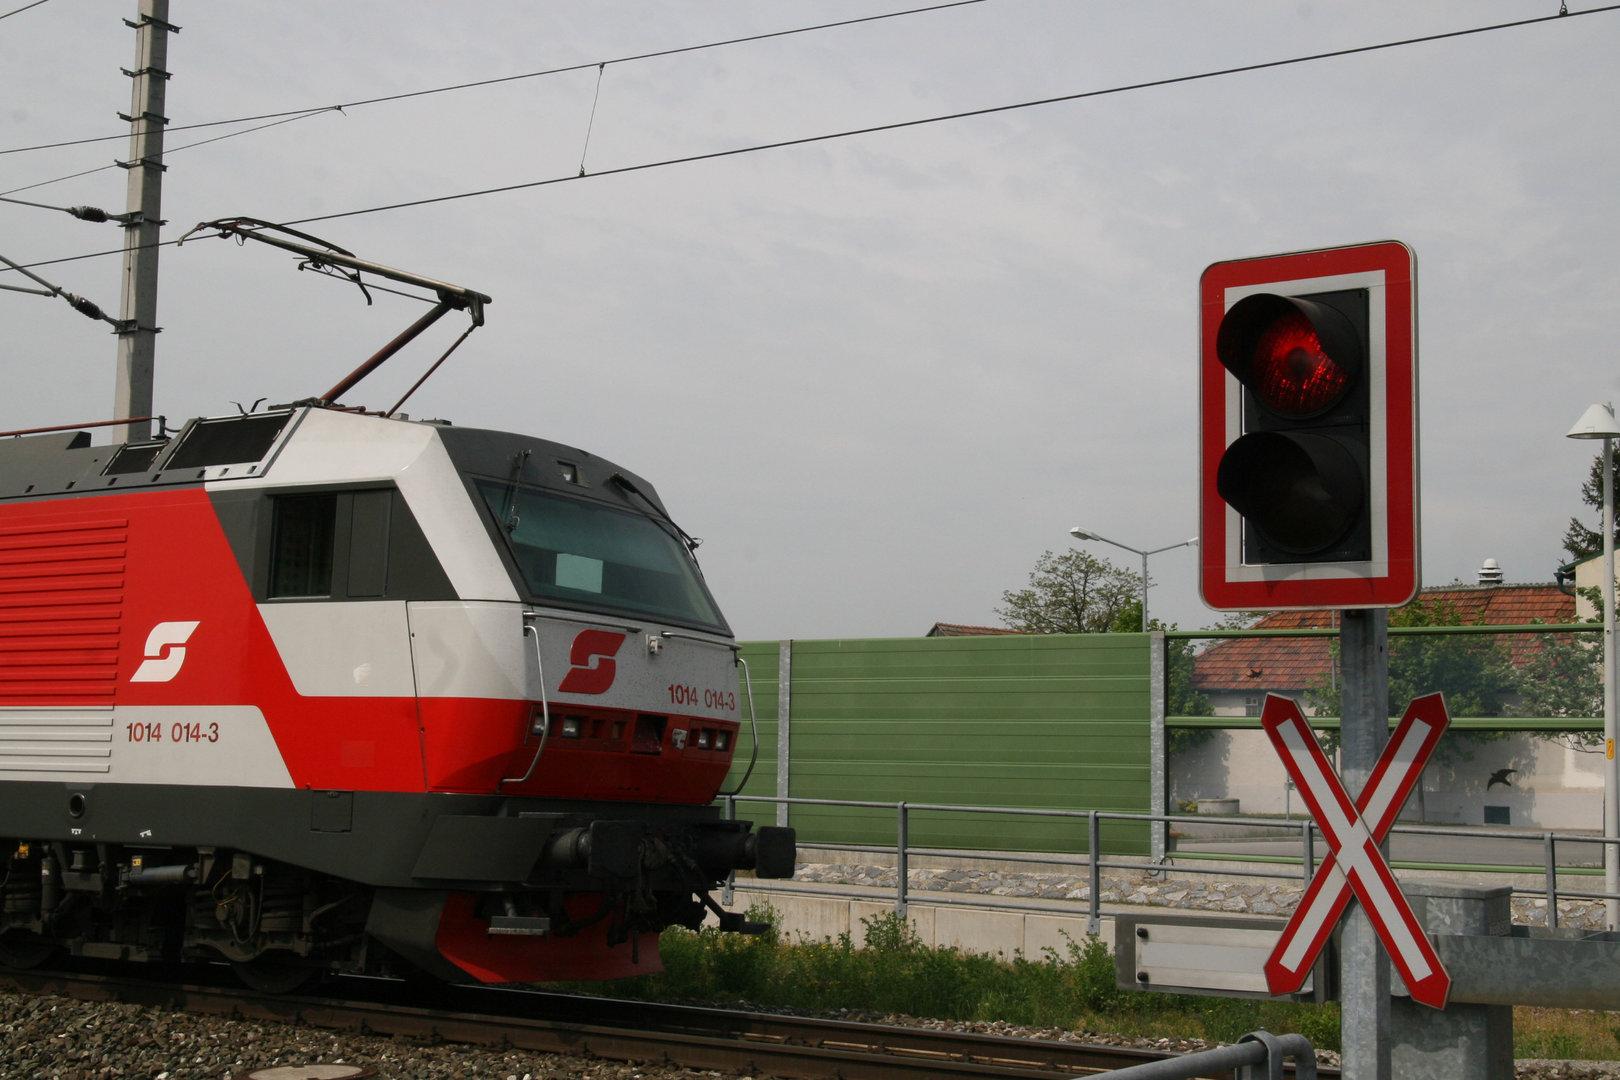 E-Biker in Oberösterreich von Zug erfasst und getötet